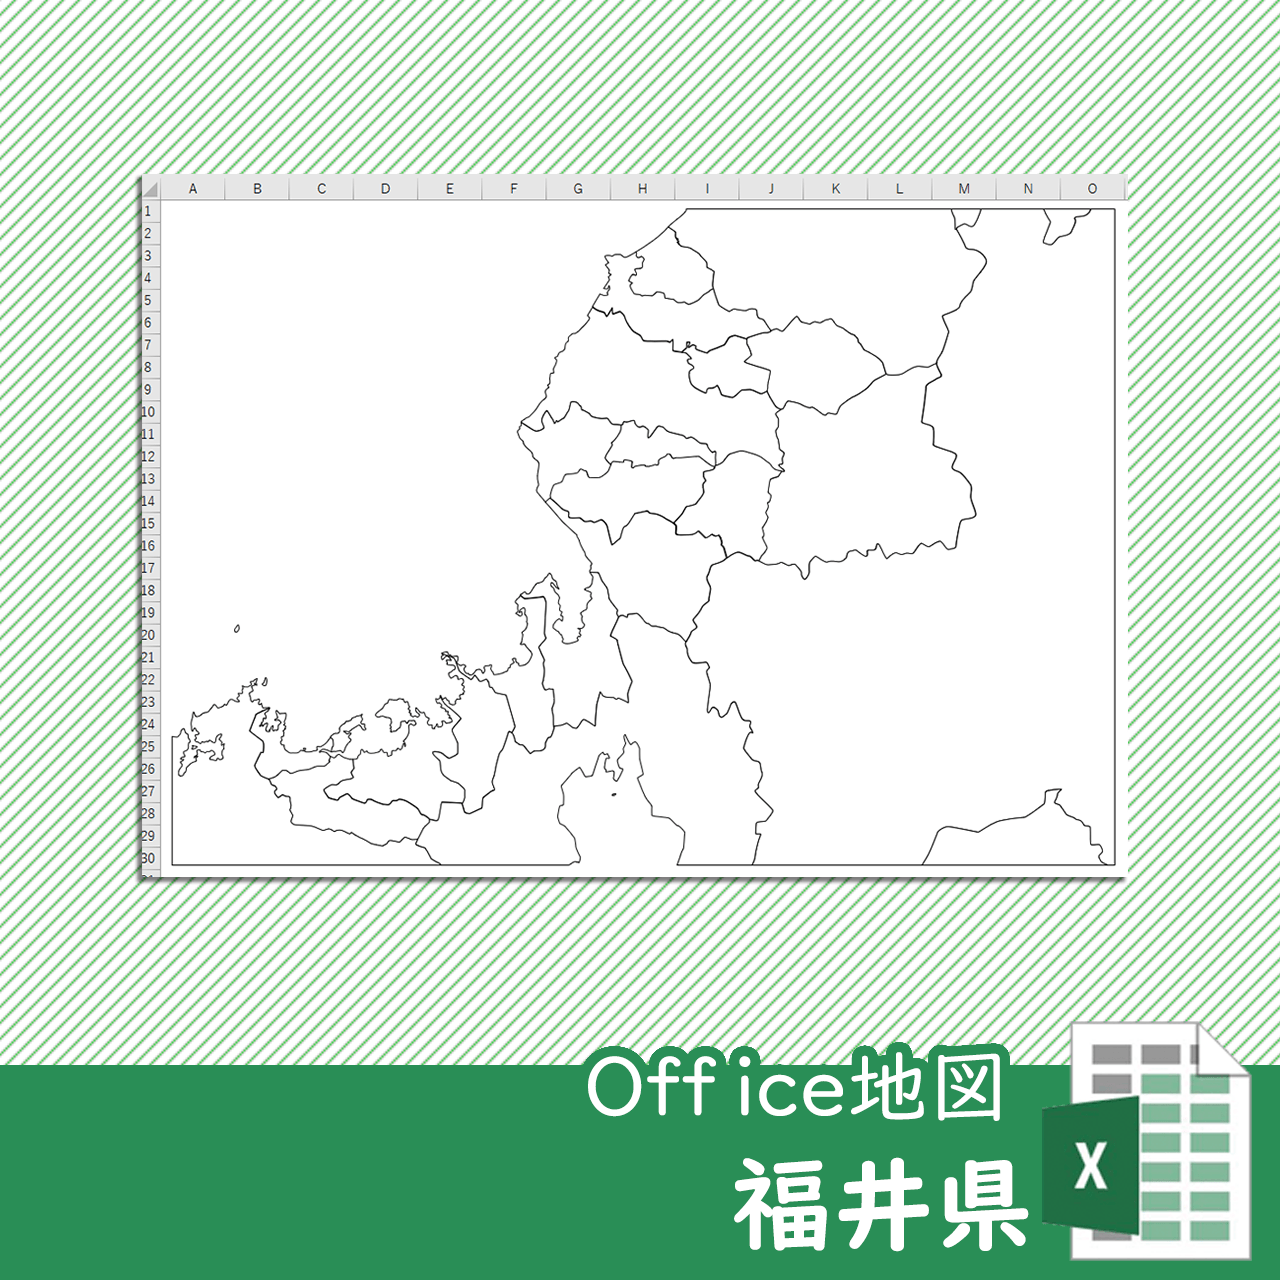 福井県のoffice地図